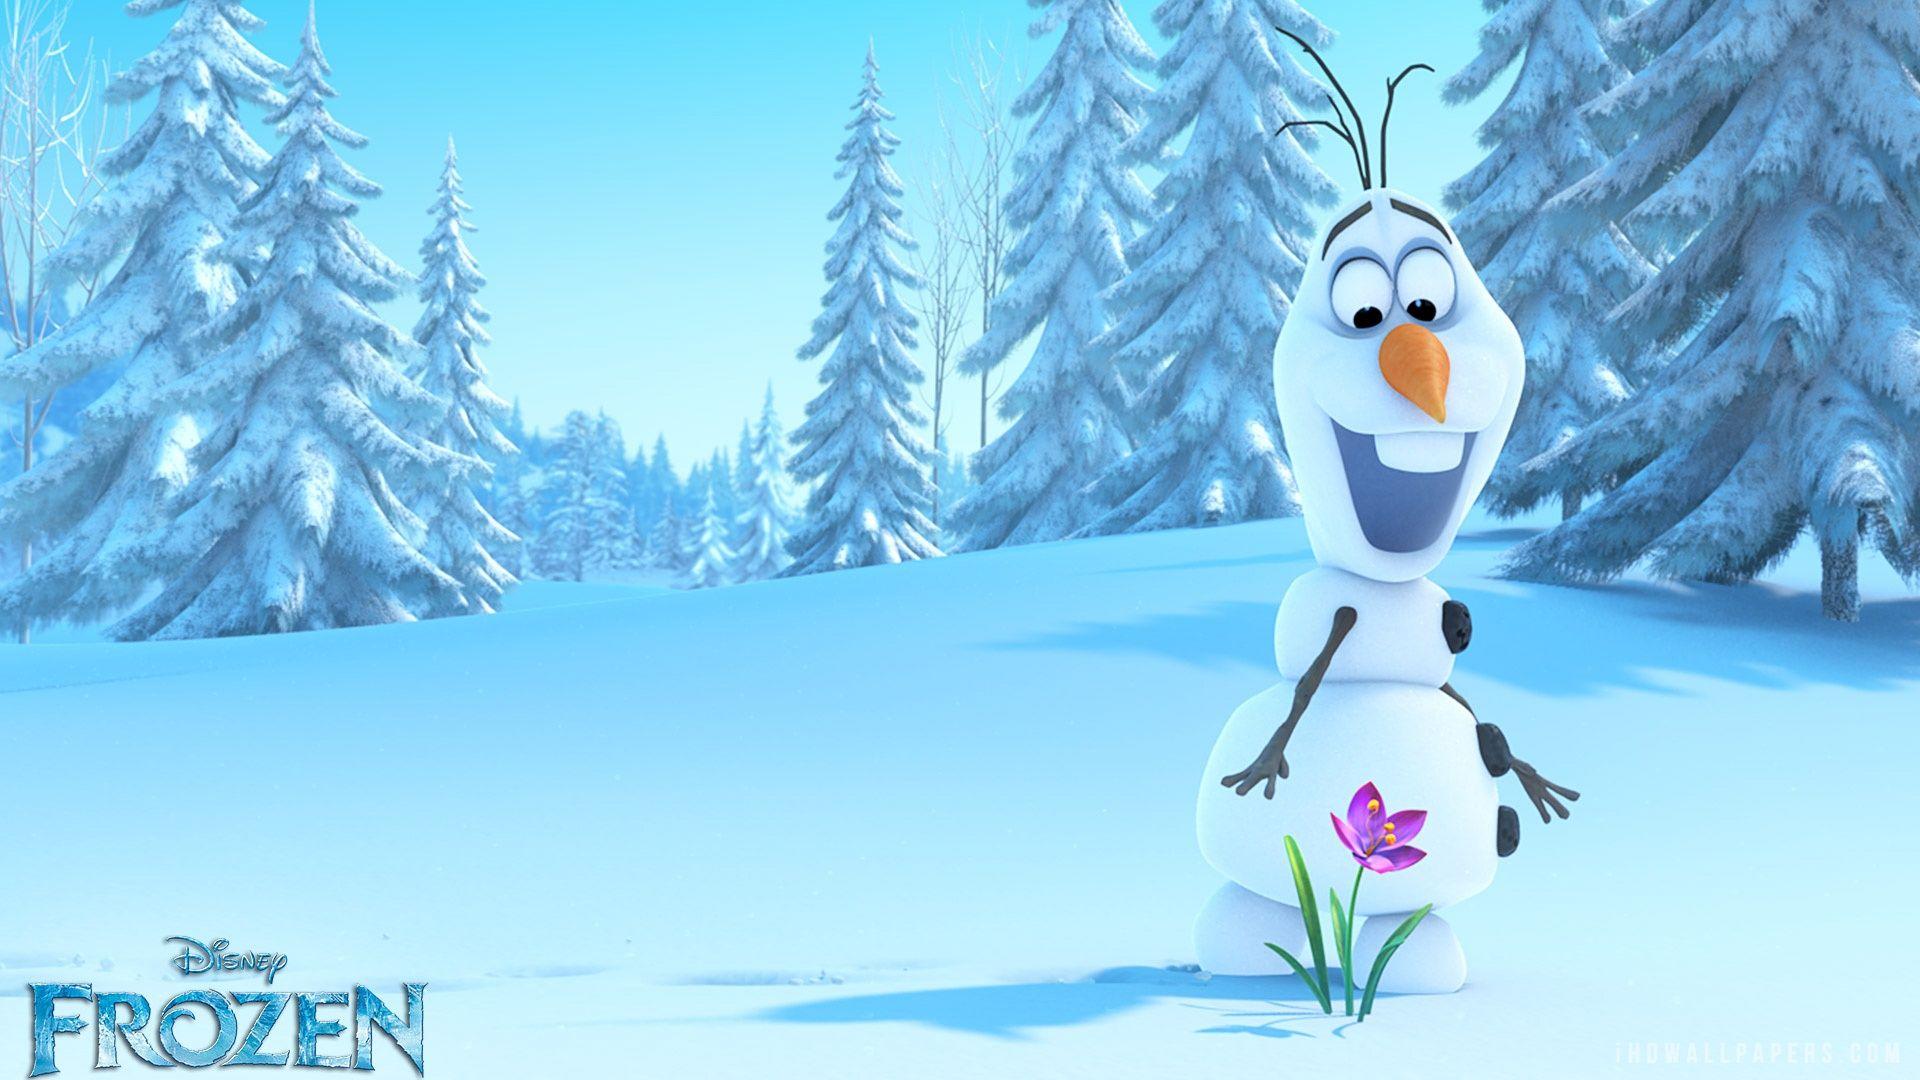 1920x1080 Tải xuống miễn phí Olaf in Frozen Wallpaper [1920x1080] cho Máy tính để bàn, Di động & Máy tính bảng của bạn.  Khám phá Hình nền Frozen.  Hình nền Olaf, Hình nền Disney Frozen, Hình nền Elsa